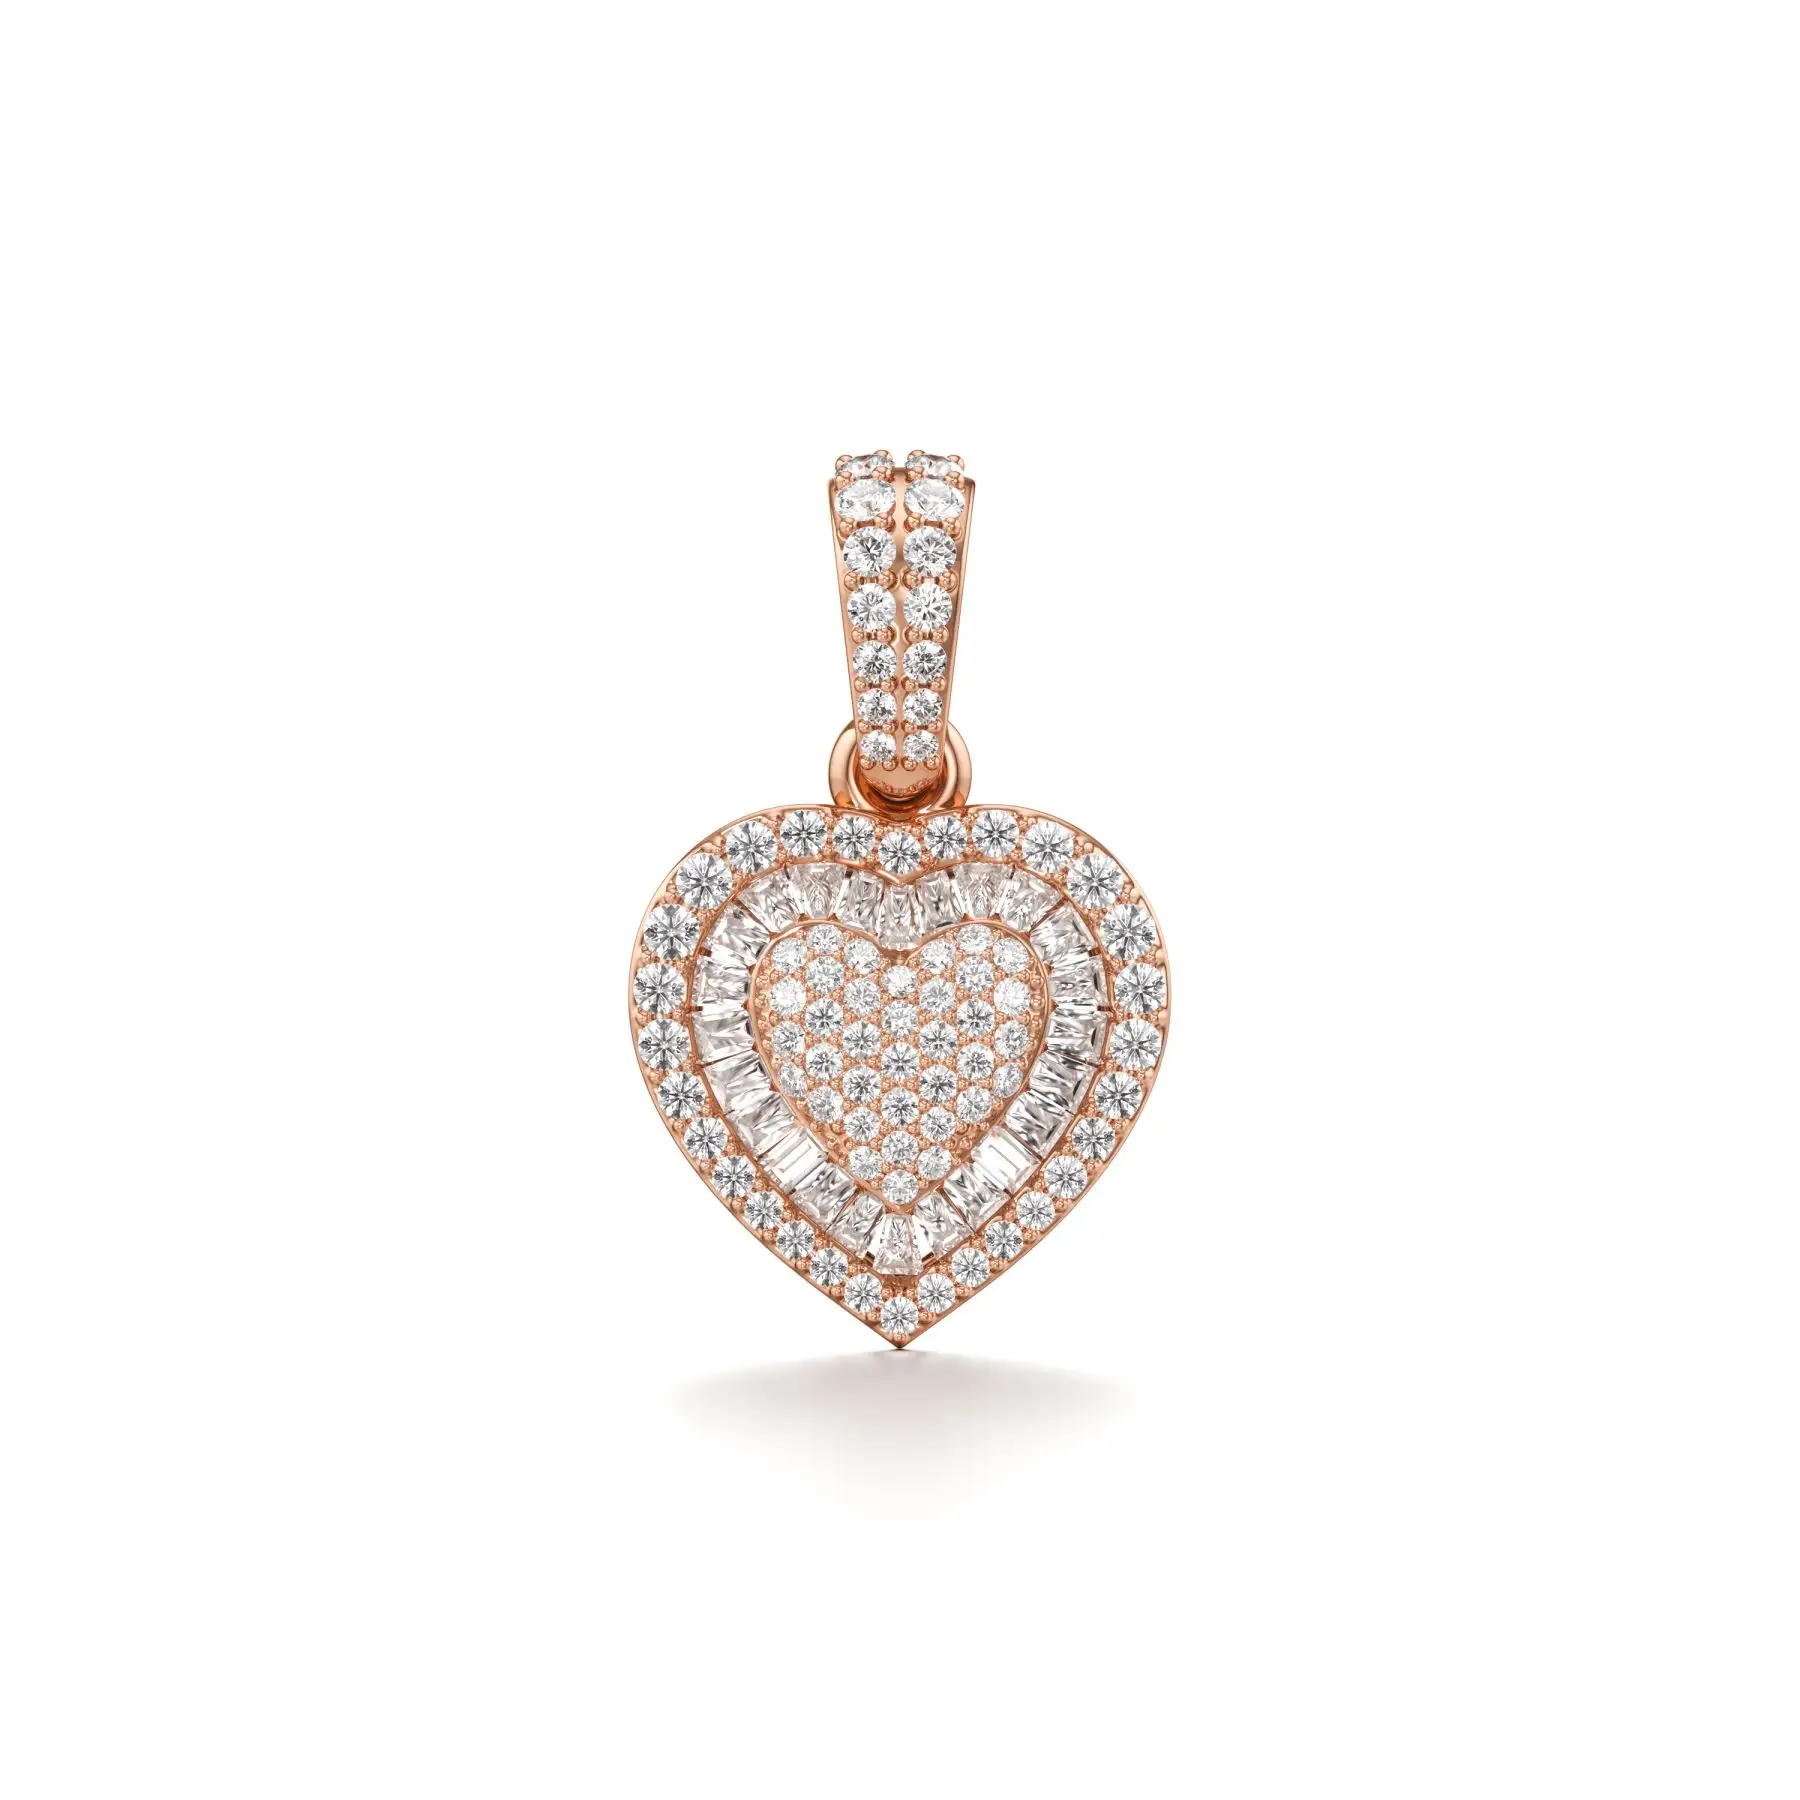 Vibing Heart Diamond Pendant in Rose 10k Gold